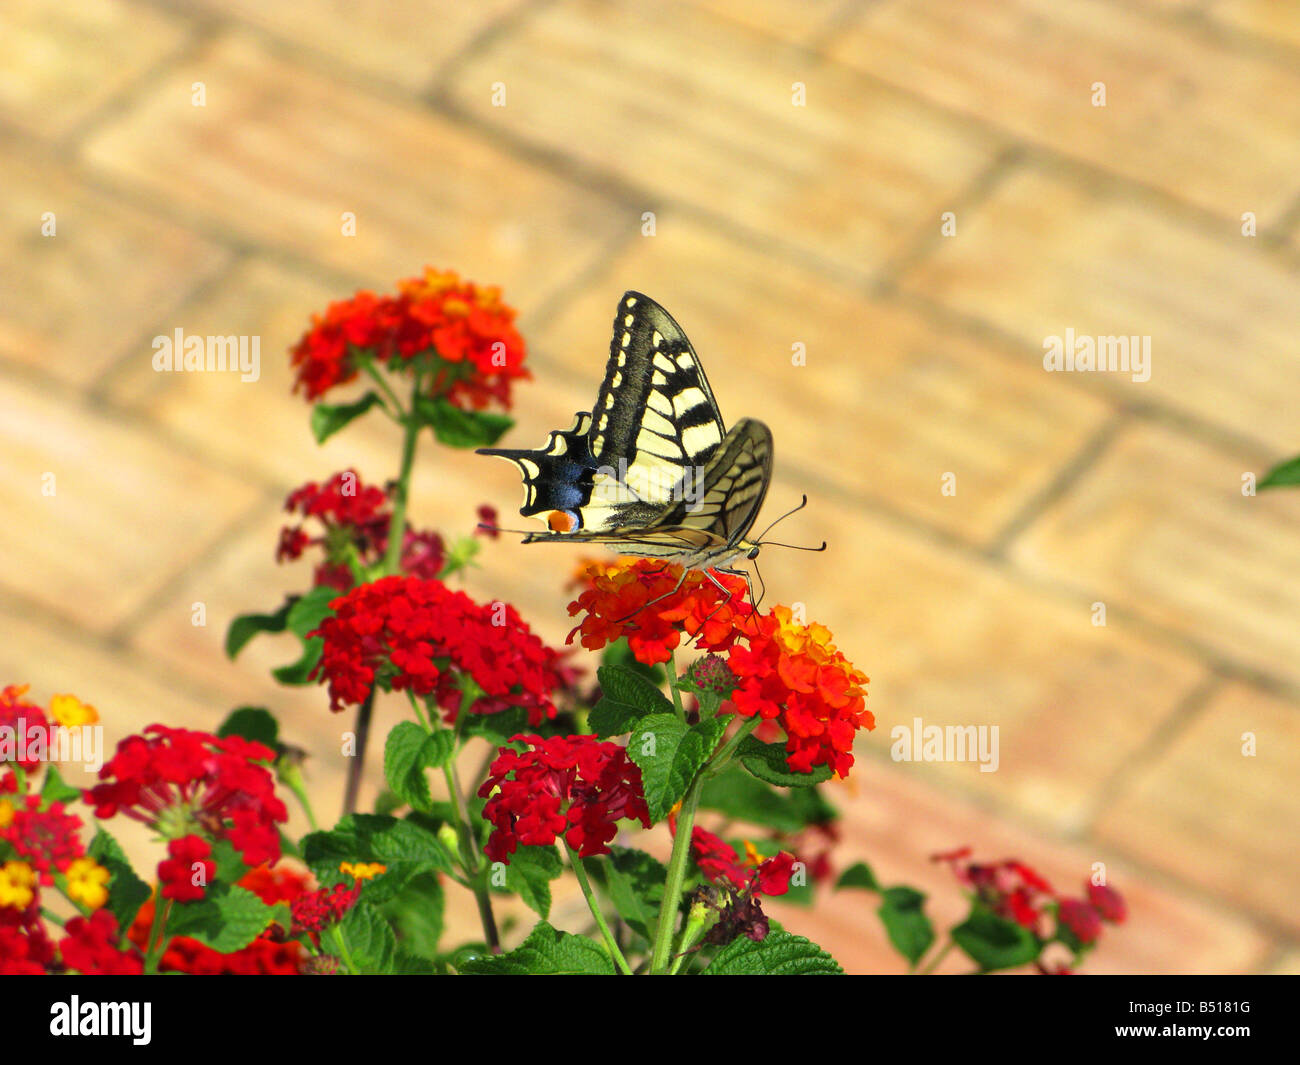 Especie de mariposas son grandes y coloridas mariposas que forman la familia Papilionidae. Foto de stock